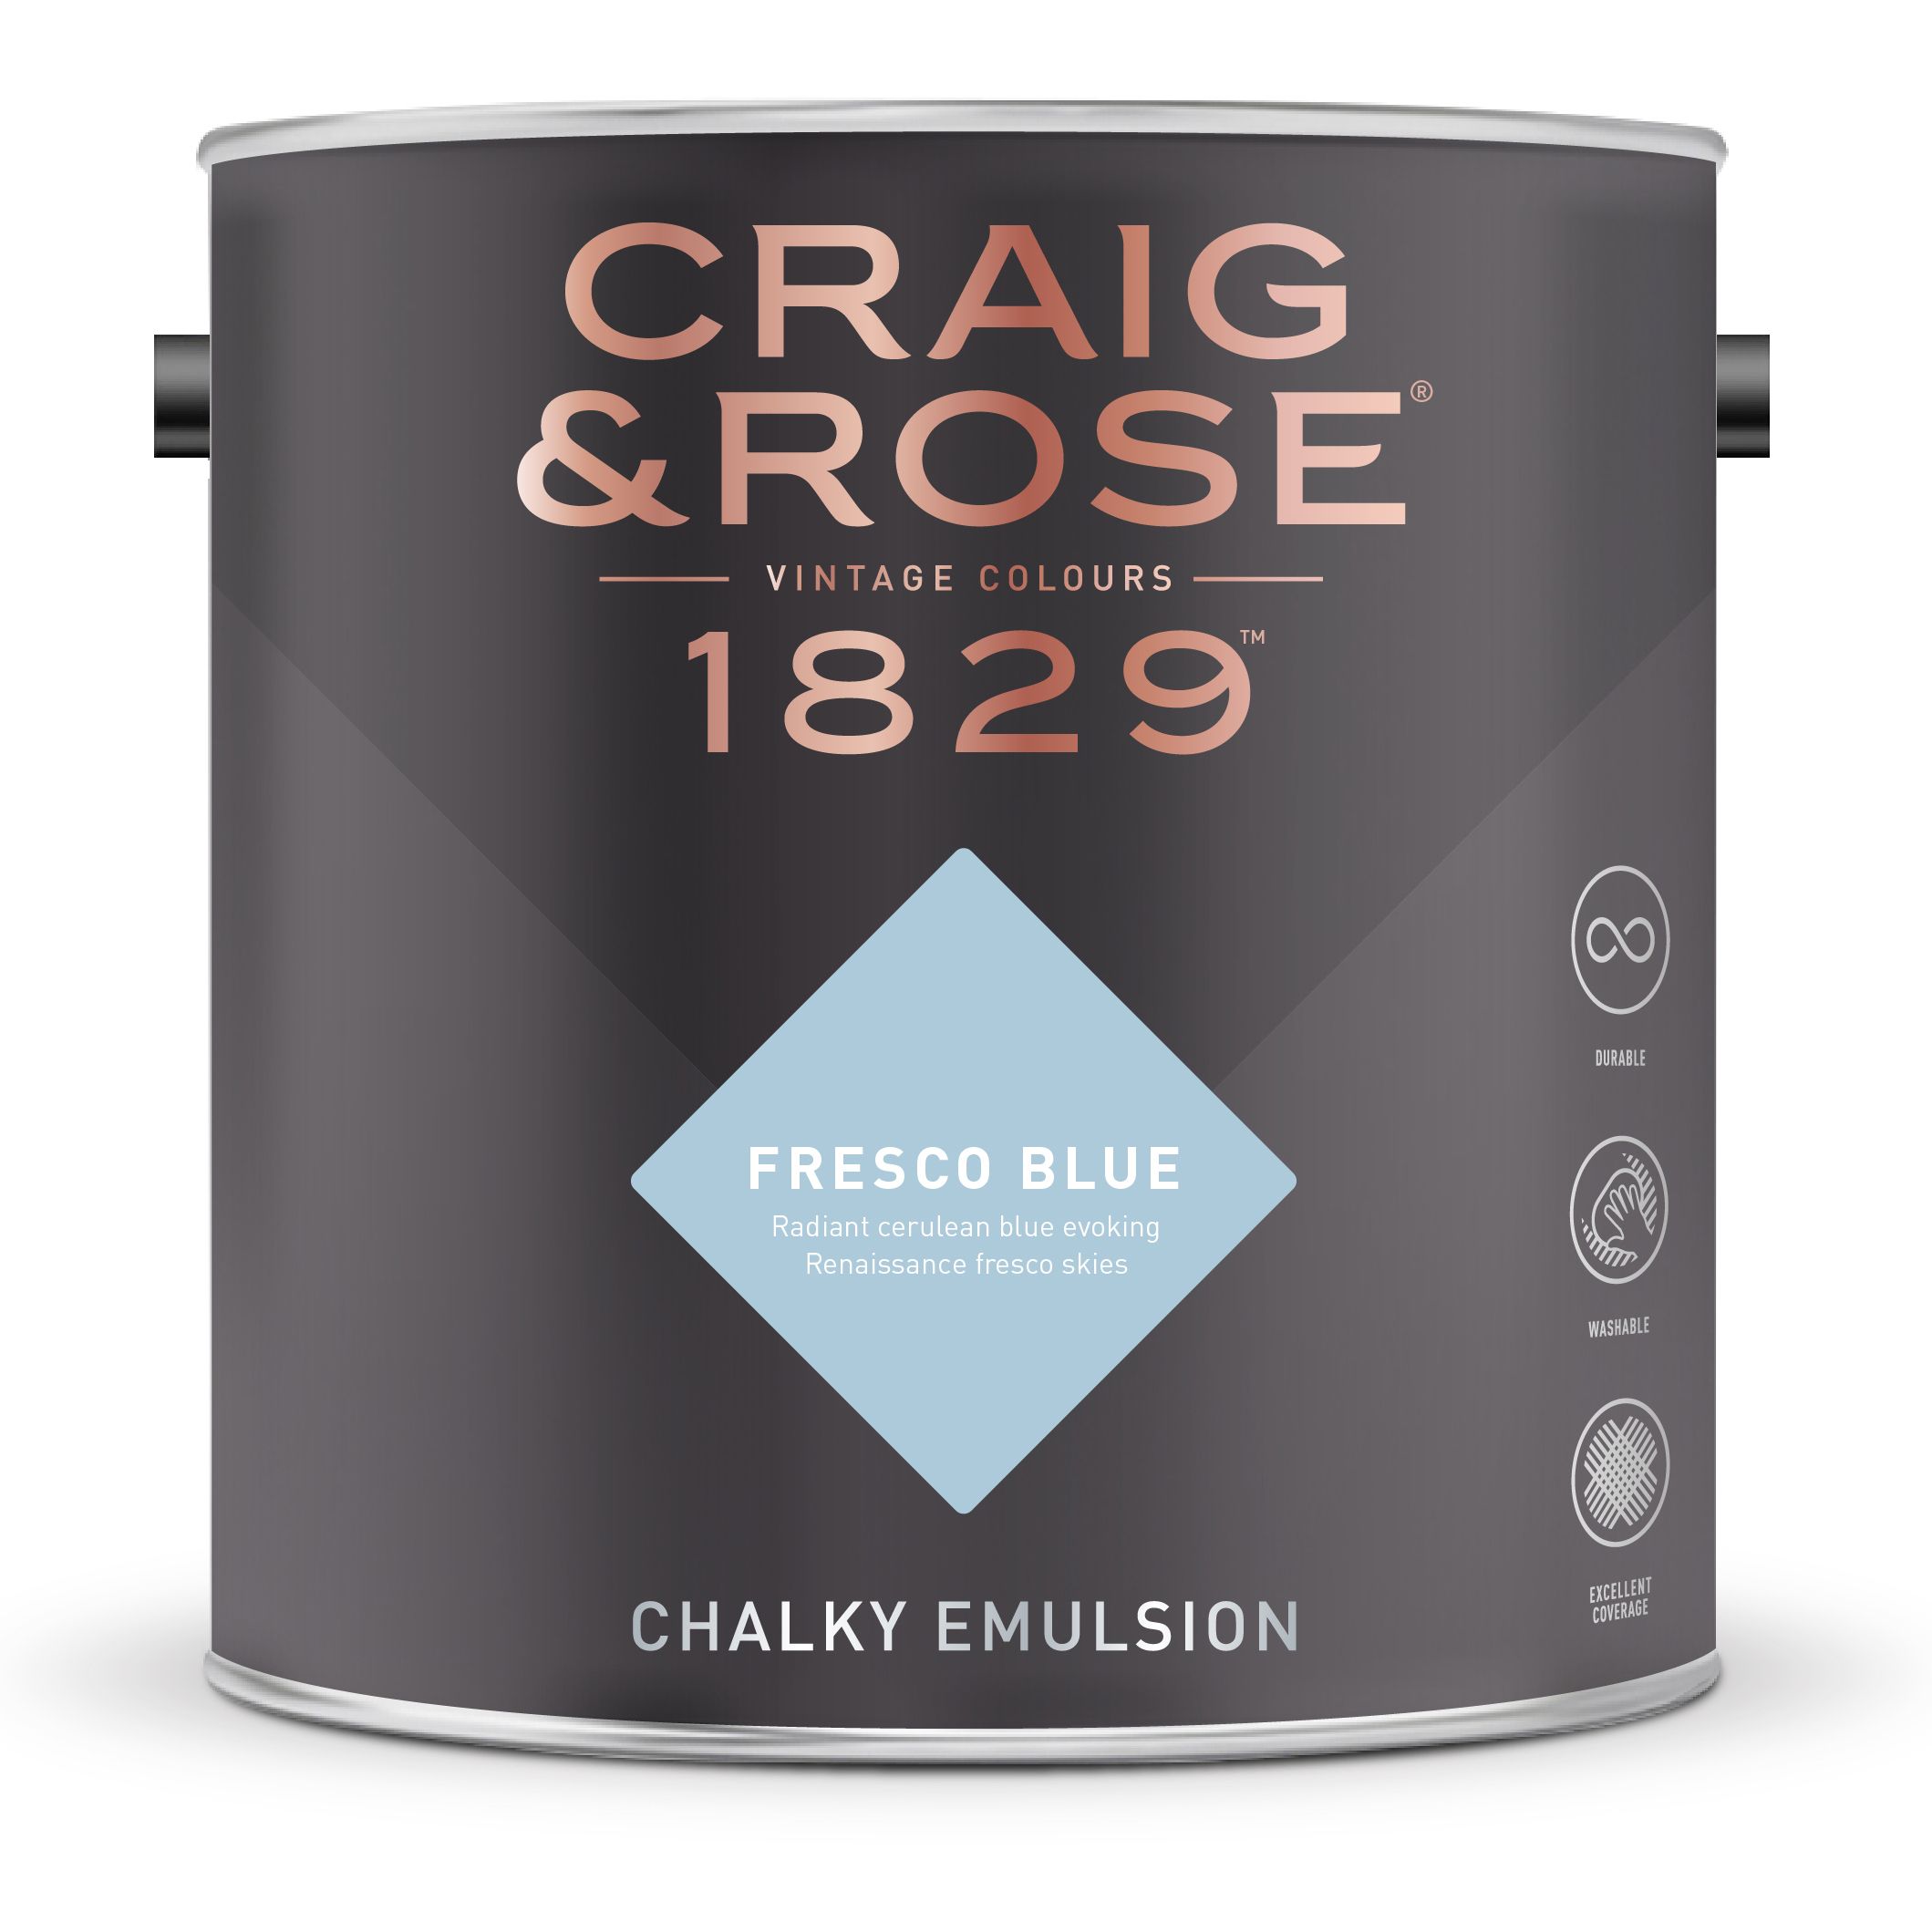 Craig & Rose 1829 Fresco Blue  Chalky Emulsion paint, 2.5L